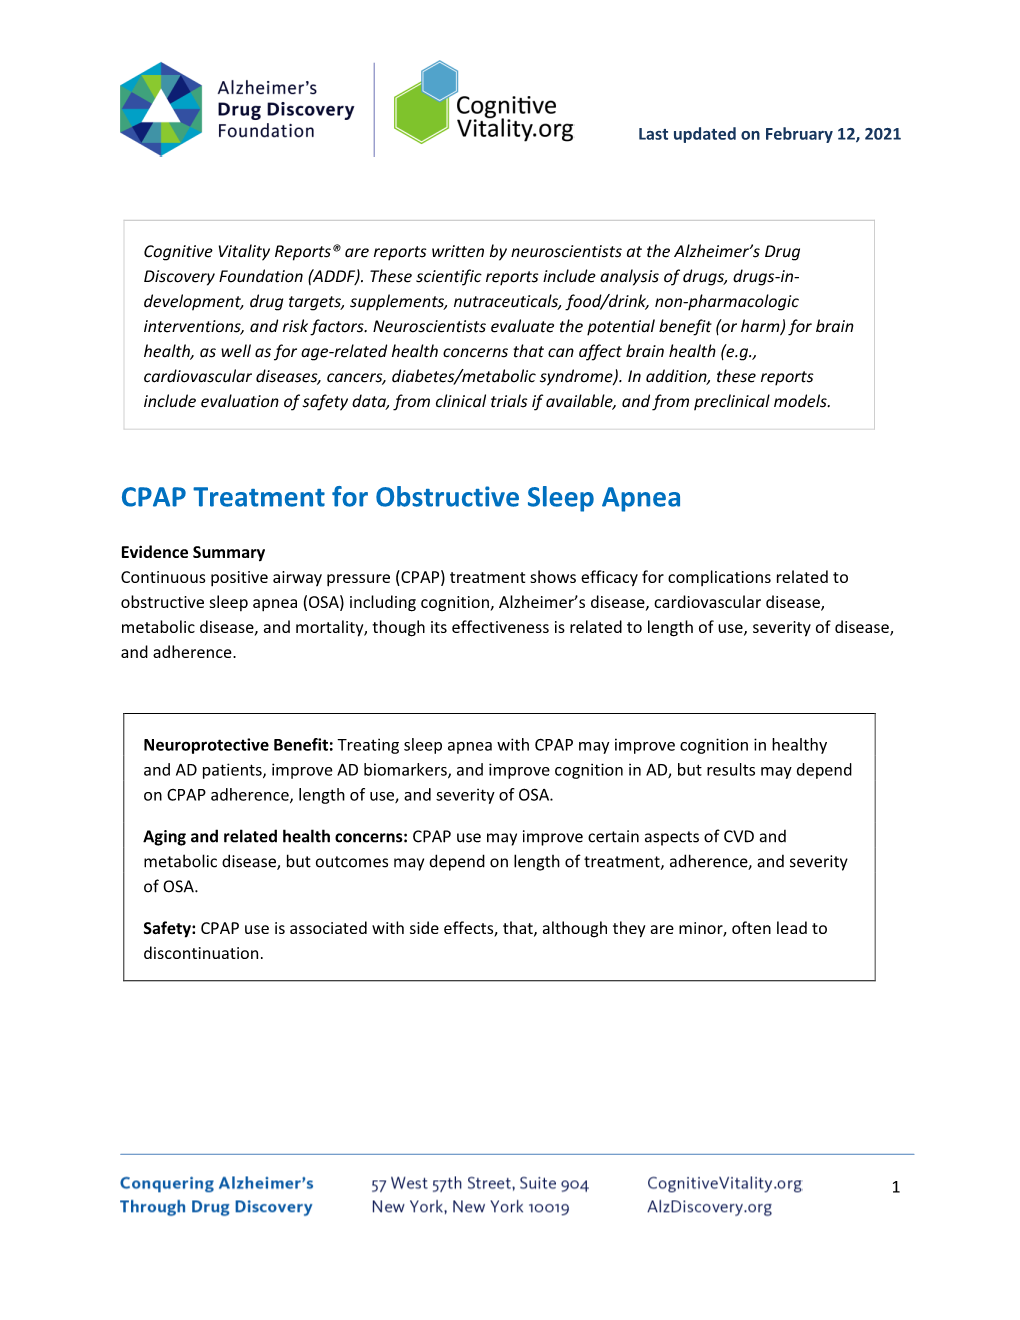 CPAP Treatment for Obstructive Sleep Apnea